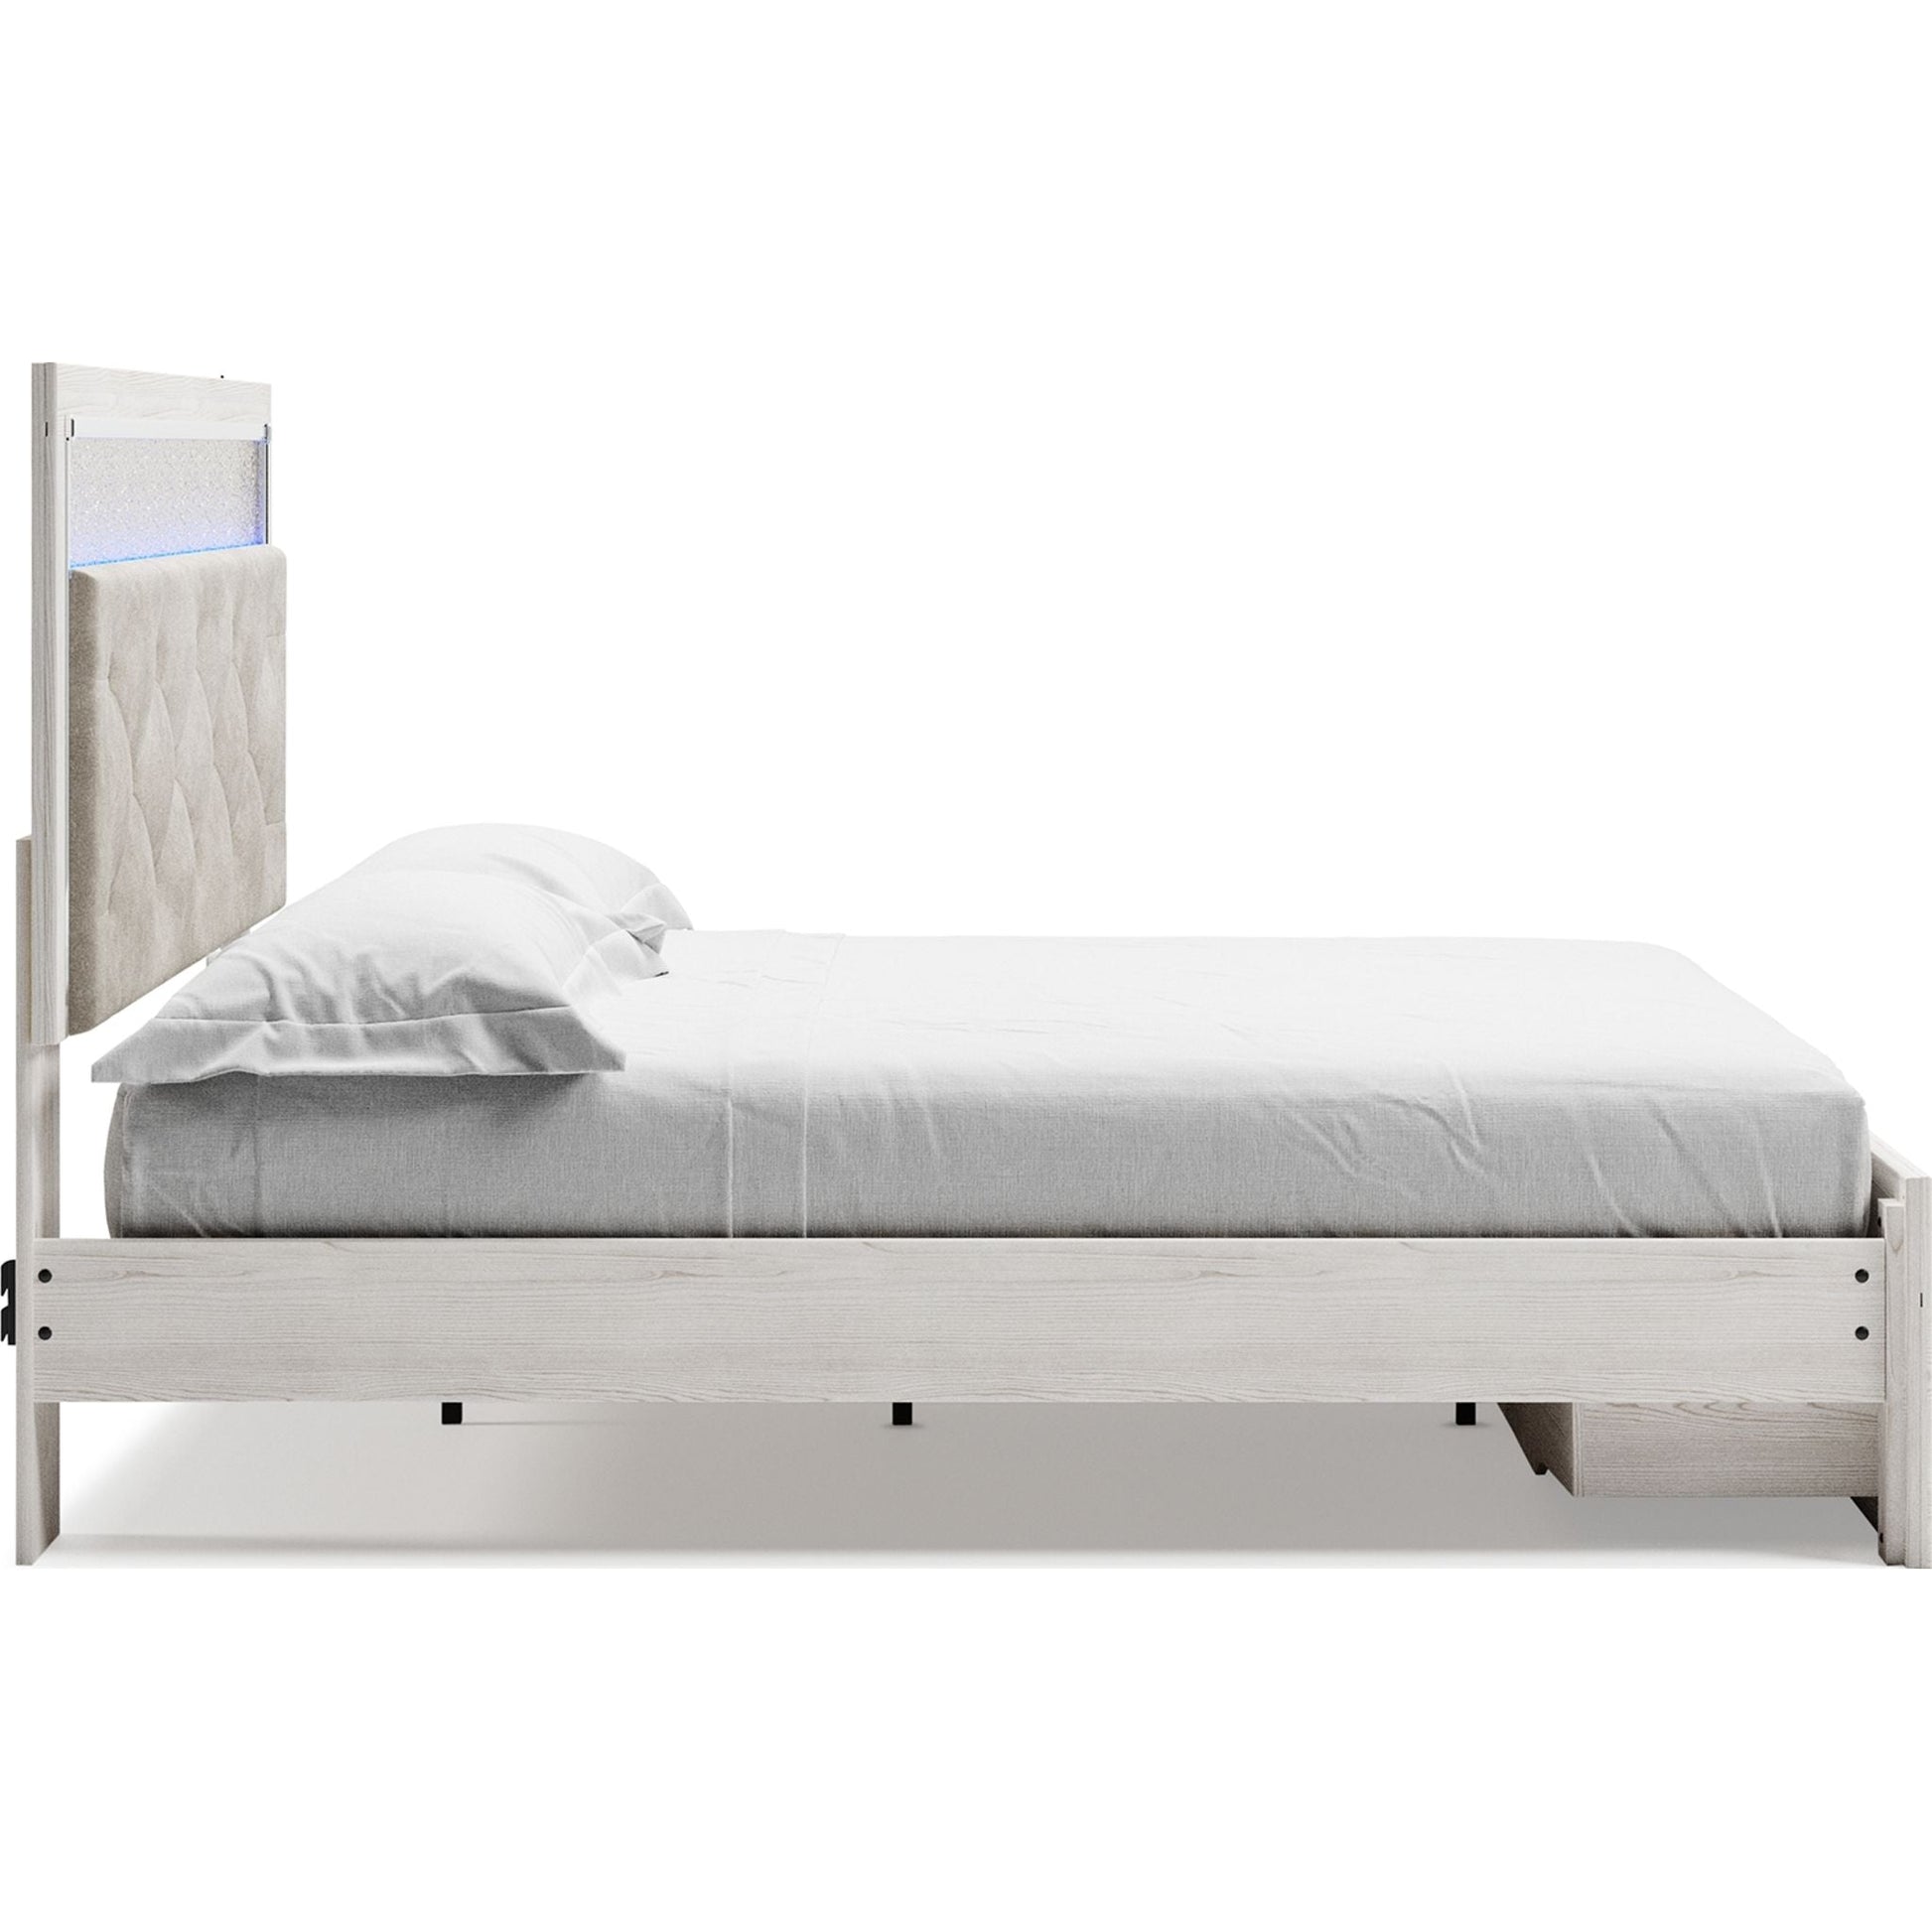 Altyra 3 Piece King Platform Bed - White